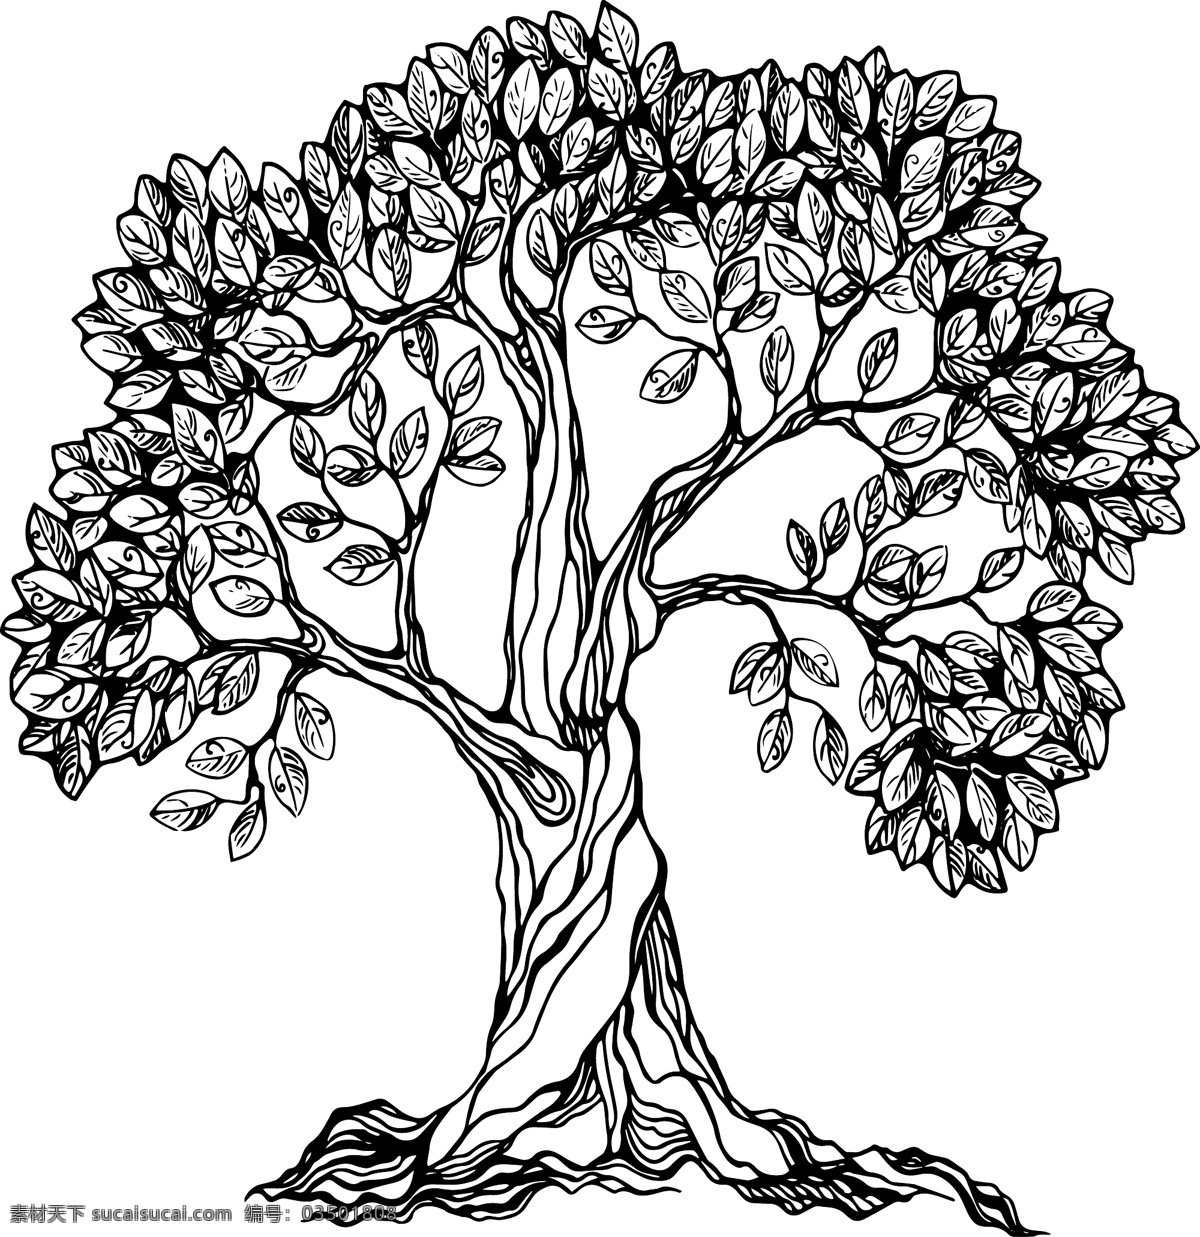 神奇 大树 古老 孤独 树木 树枝 年代久远 植物 矢量图 文化艺术 绘画书法